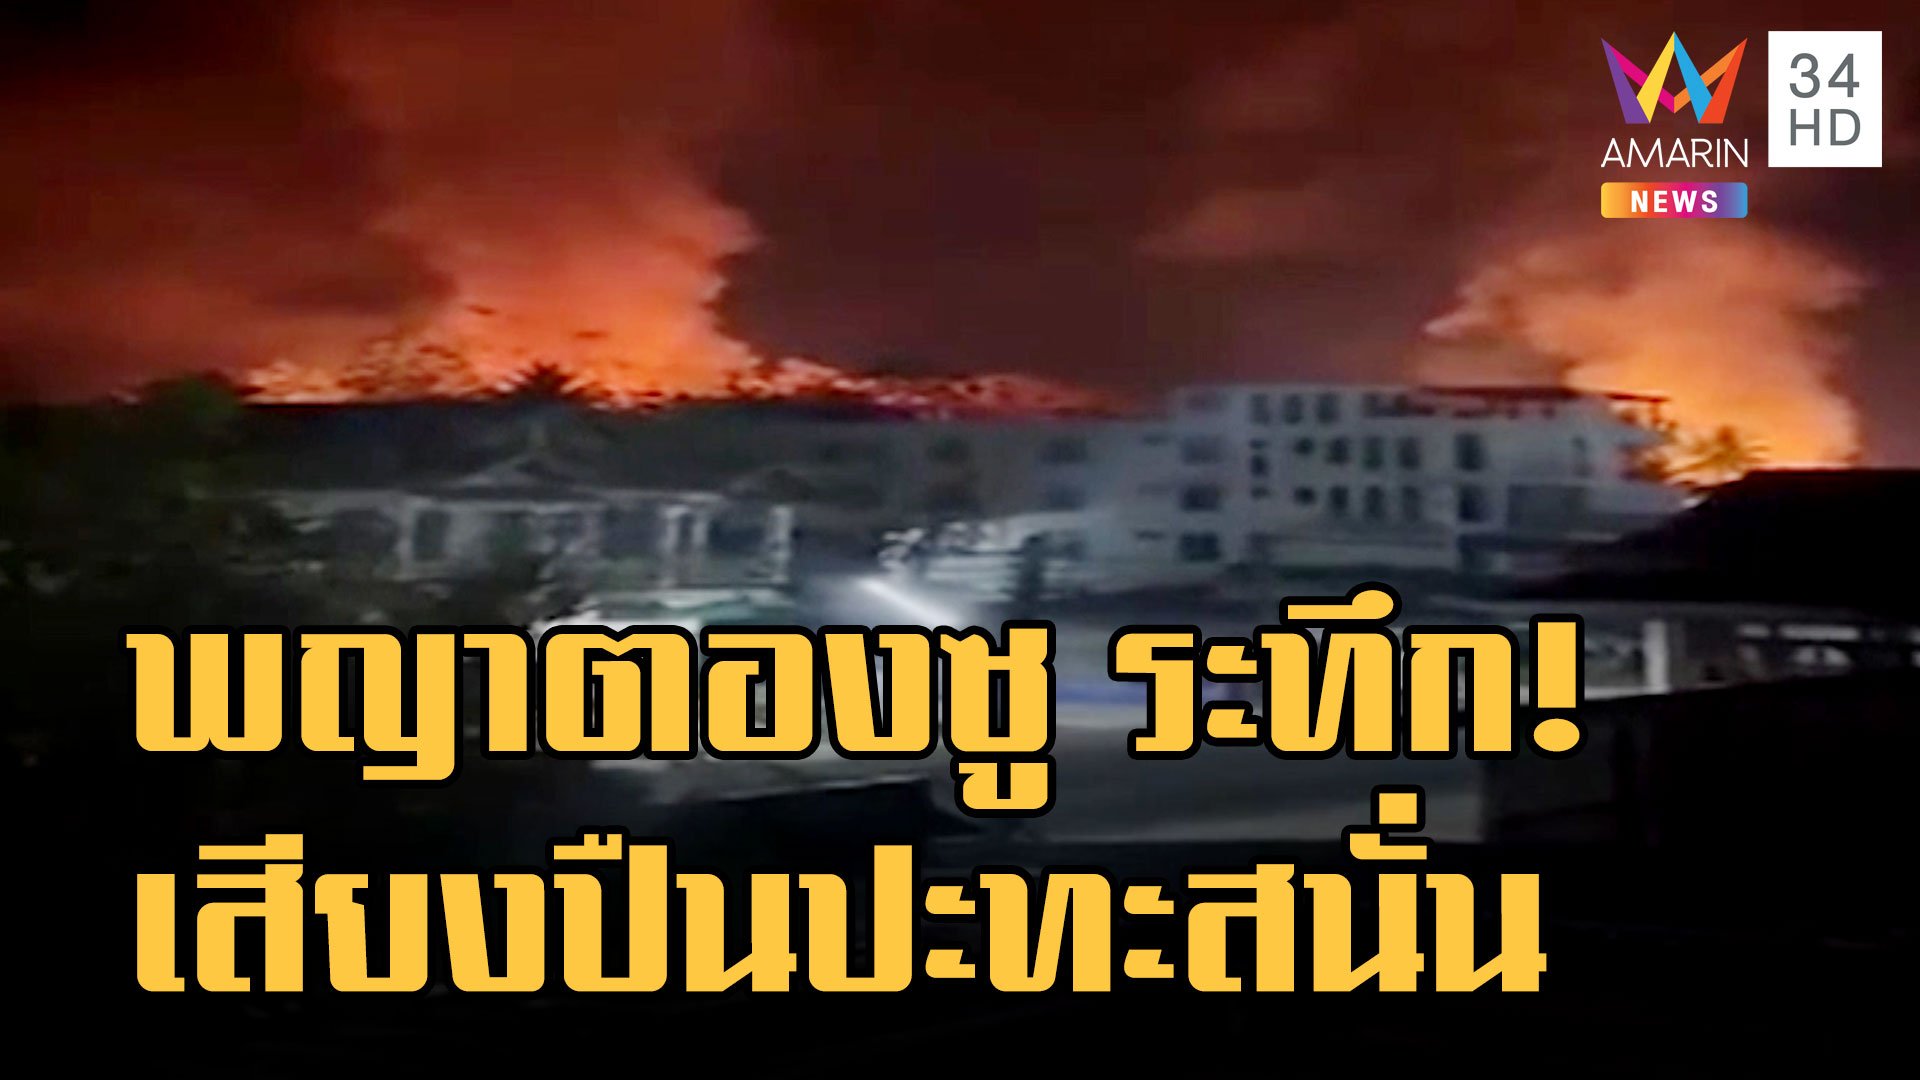 "พญาตองซู" เสียงปืนใหญ่ปะทะสนั่น เพลิงไหม้เผ่าวอด | ข่าวเที่ยงอมรินทร์ | 24 ม.ค. 66 | AMARIN TVHD34